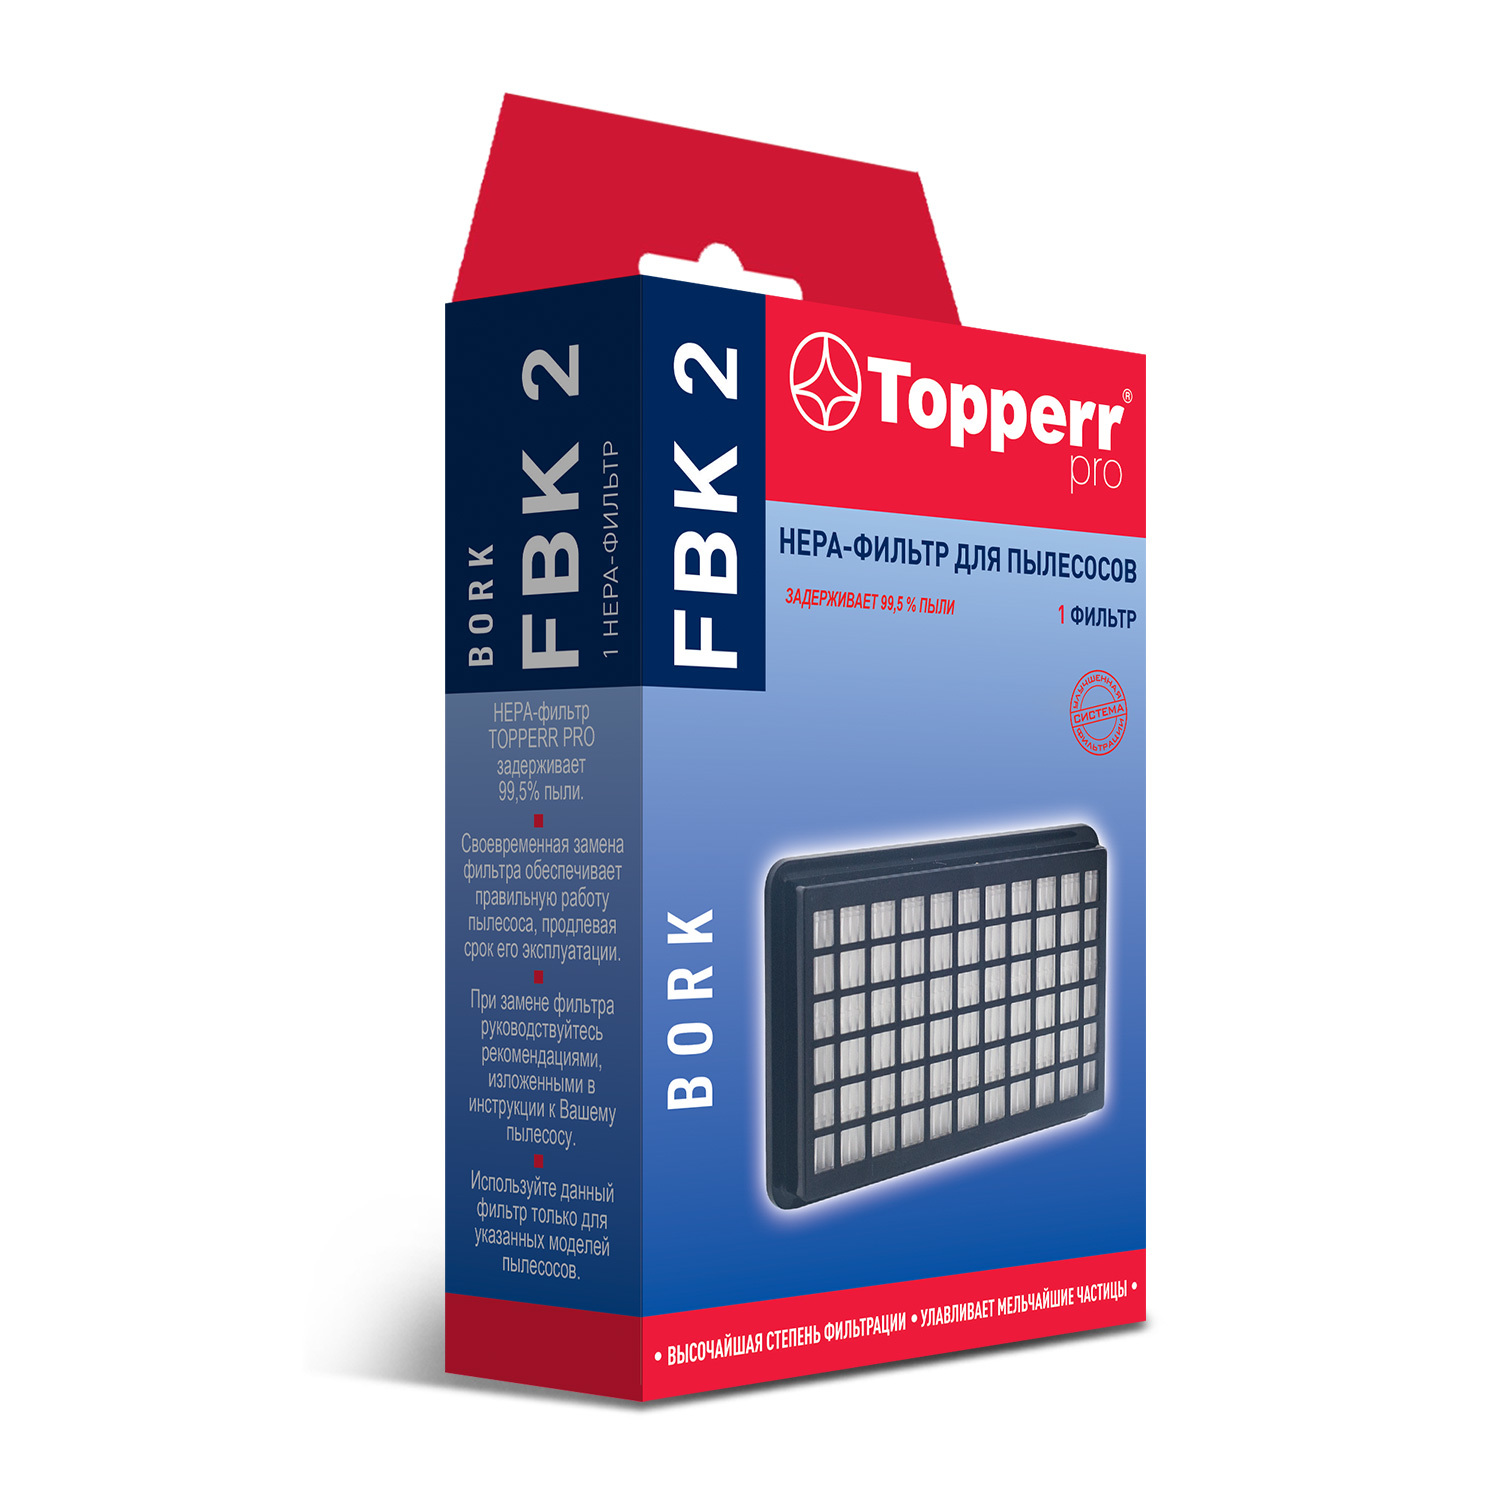 HEPA-фильтр Topperr FBK 2 для пылесосов Bork цена и фото